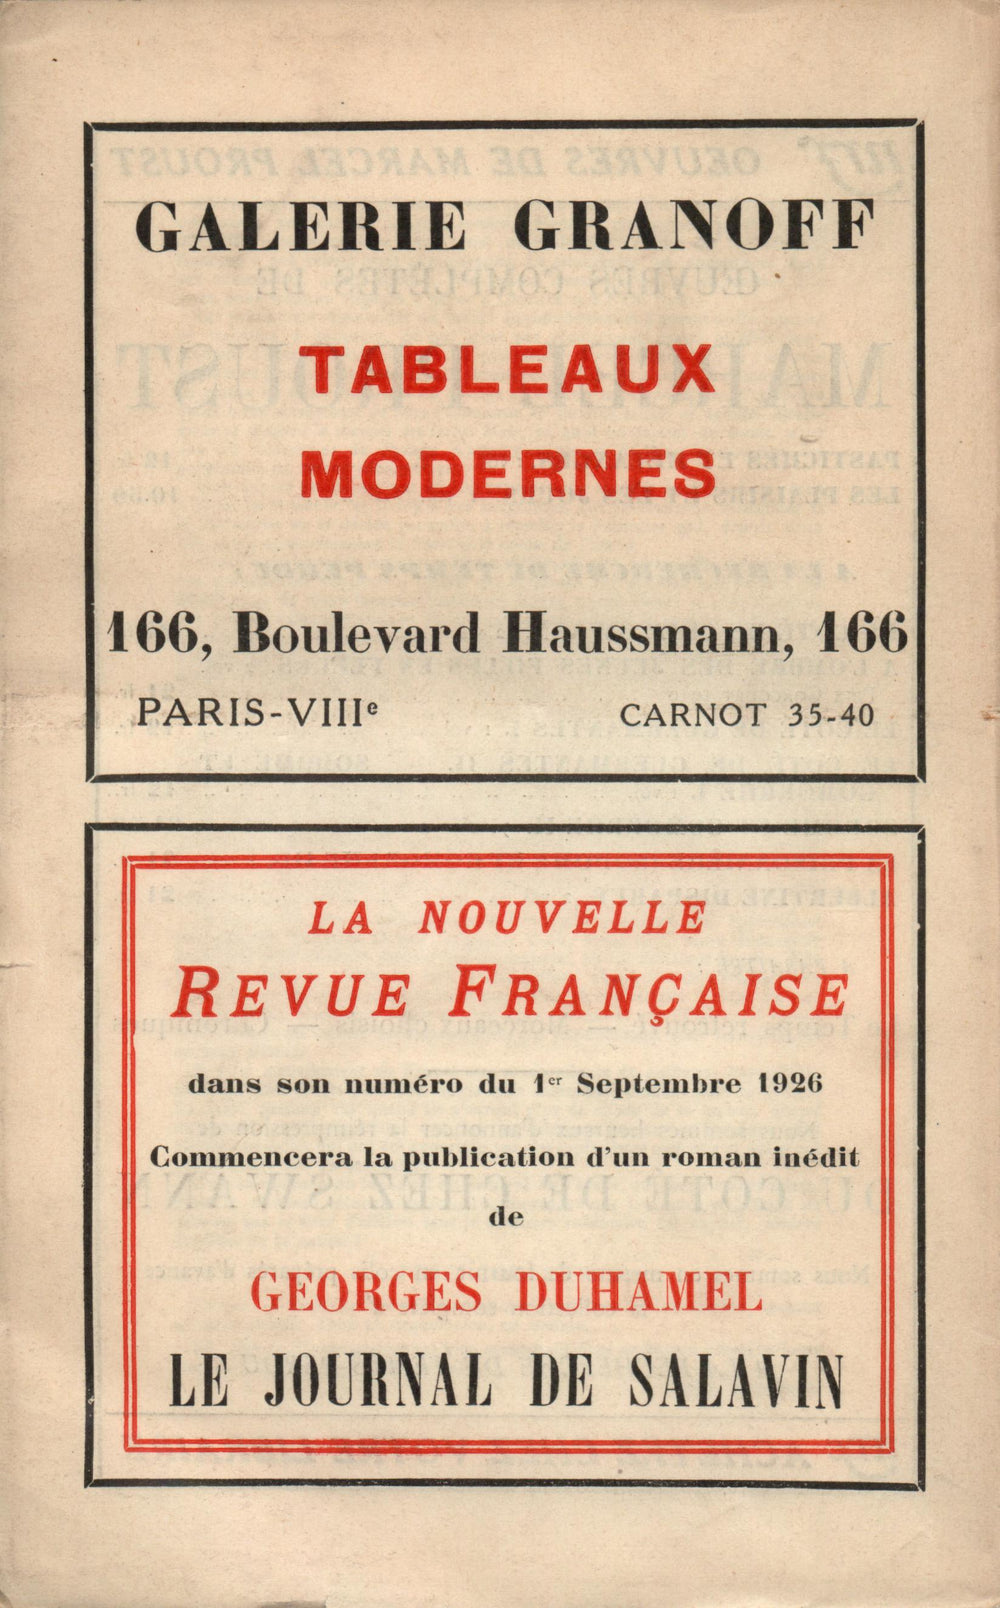 La Nouvelle Revue Française N' 155 (Aoűt 1926)